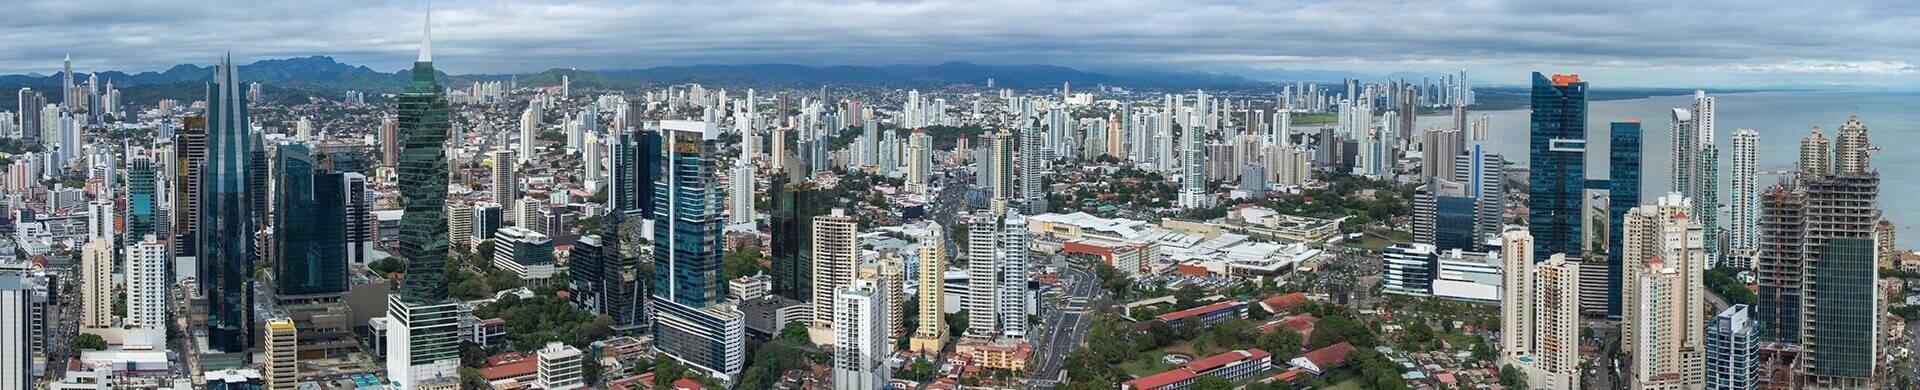 Miasta Panama - tło nagłówka strony